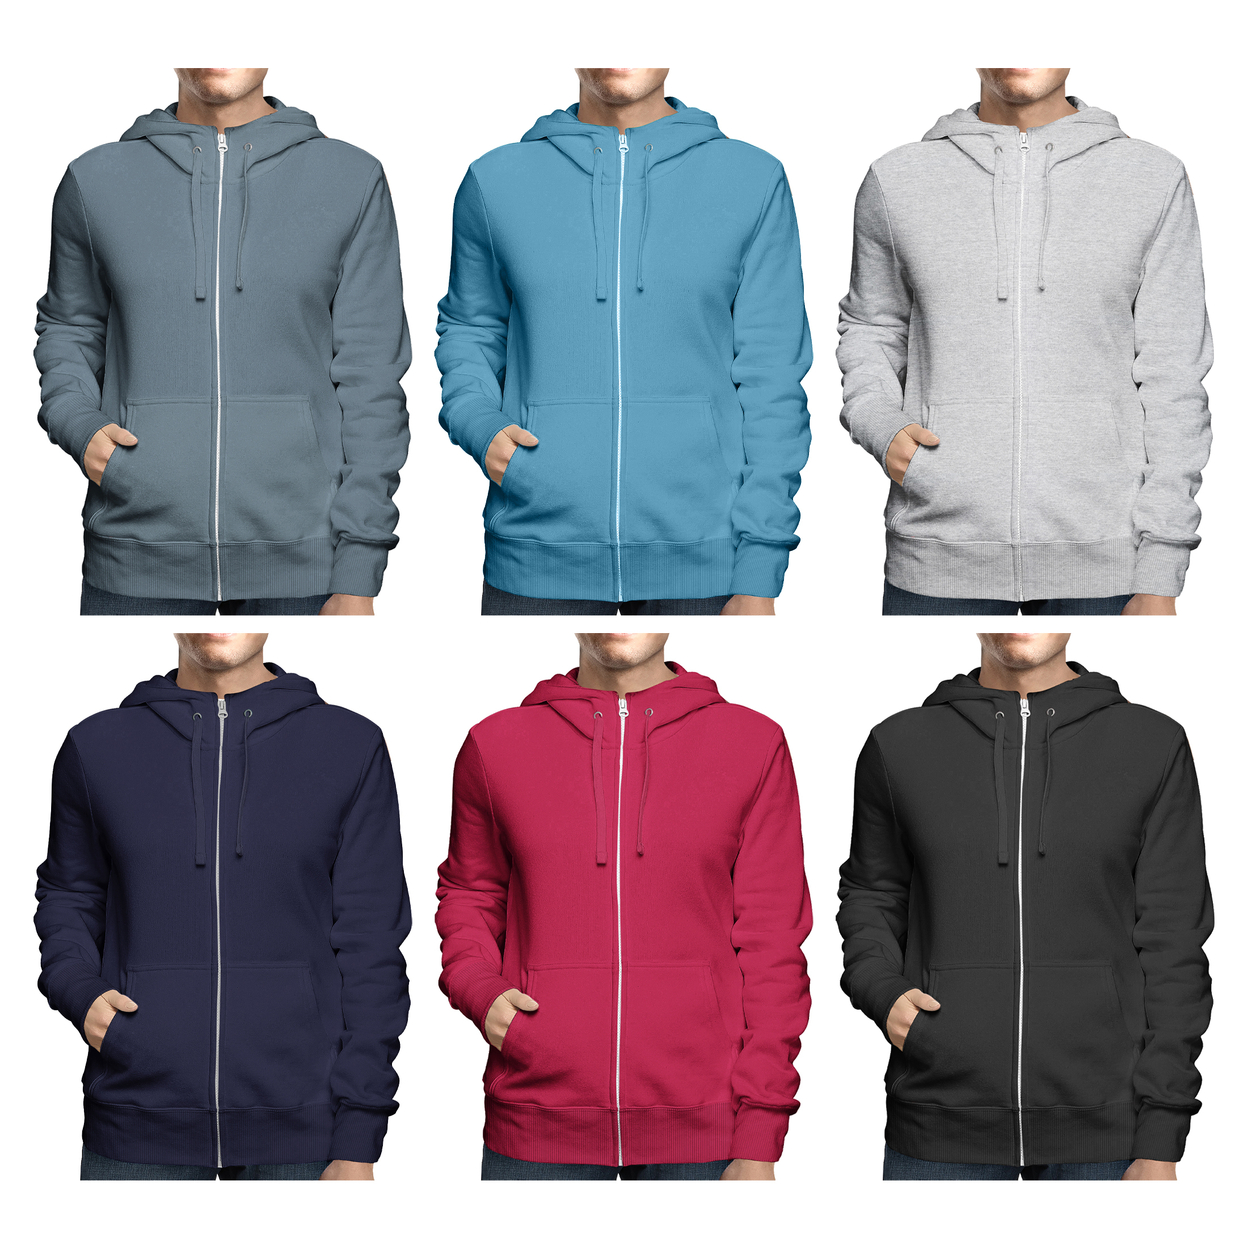 Men's Winter Warm Cozy Full Zip-Up Fleece Lined Soft Hoodie Sweatshirt - Navy, Large